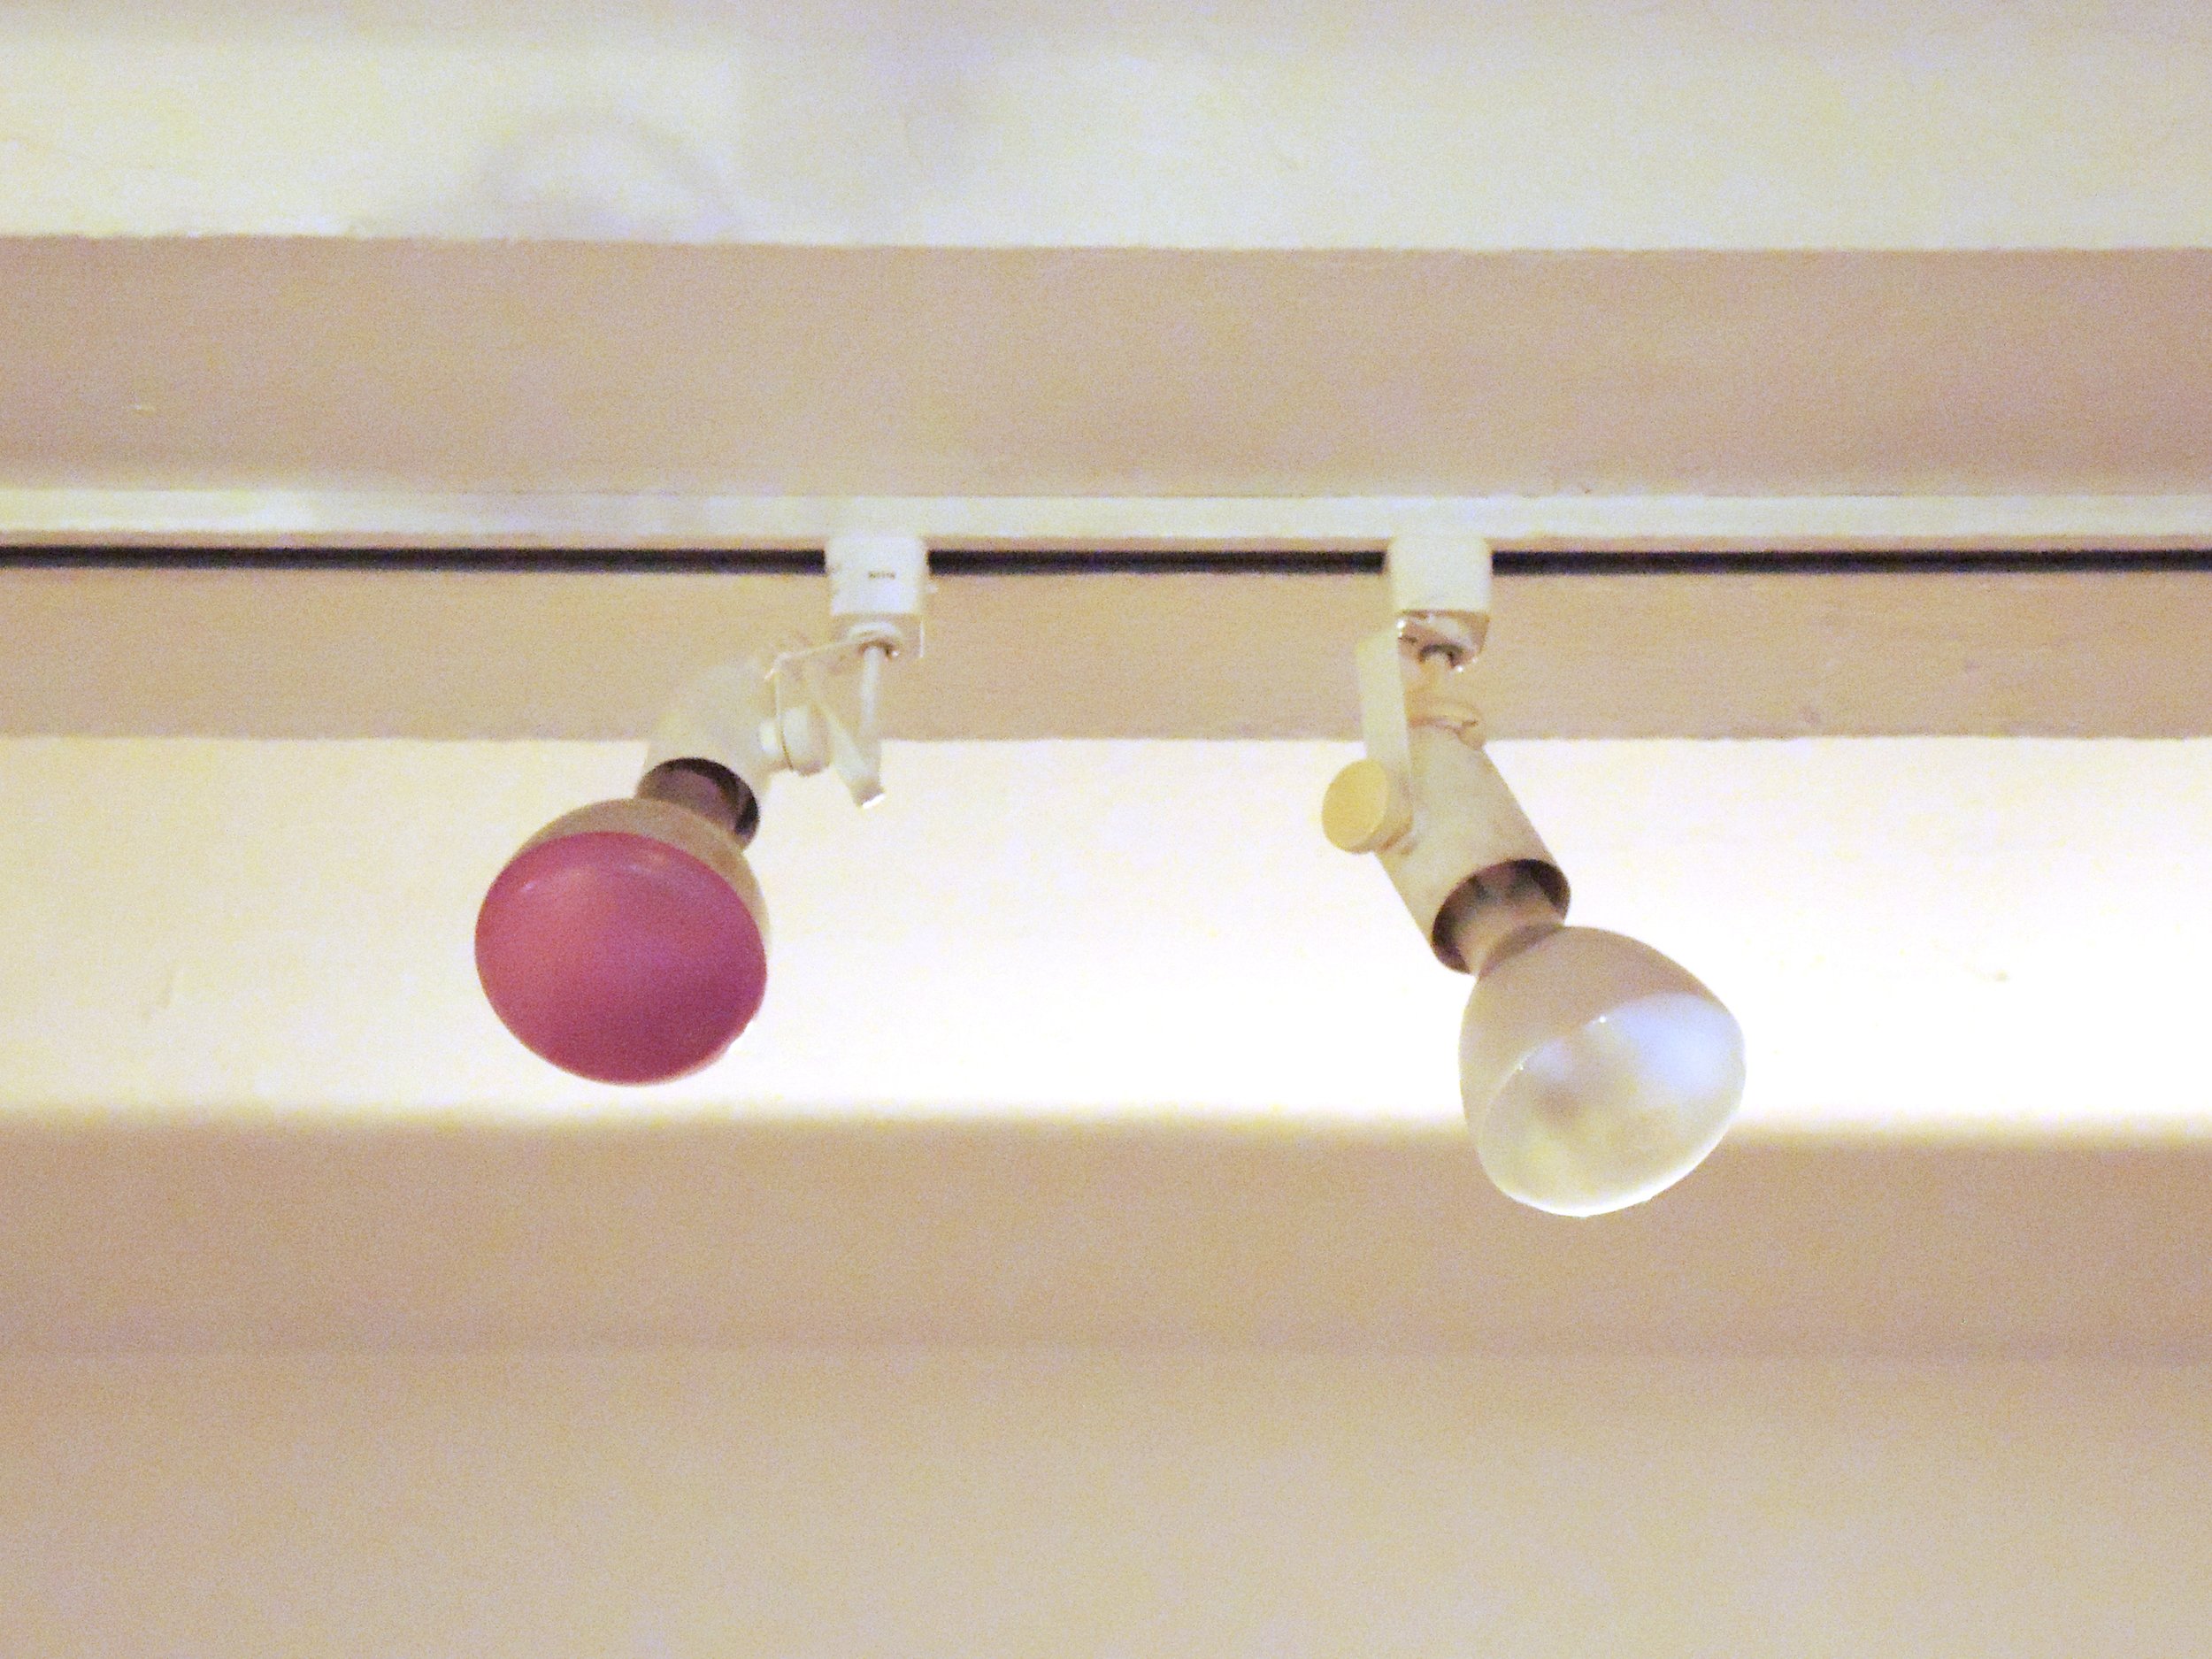  Ellipsoidal Reflector Spot Lights: pink or incandescent color. 